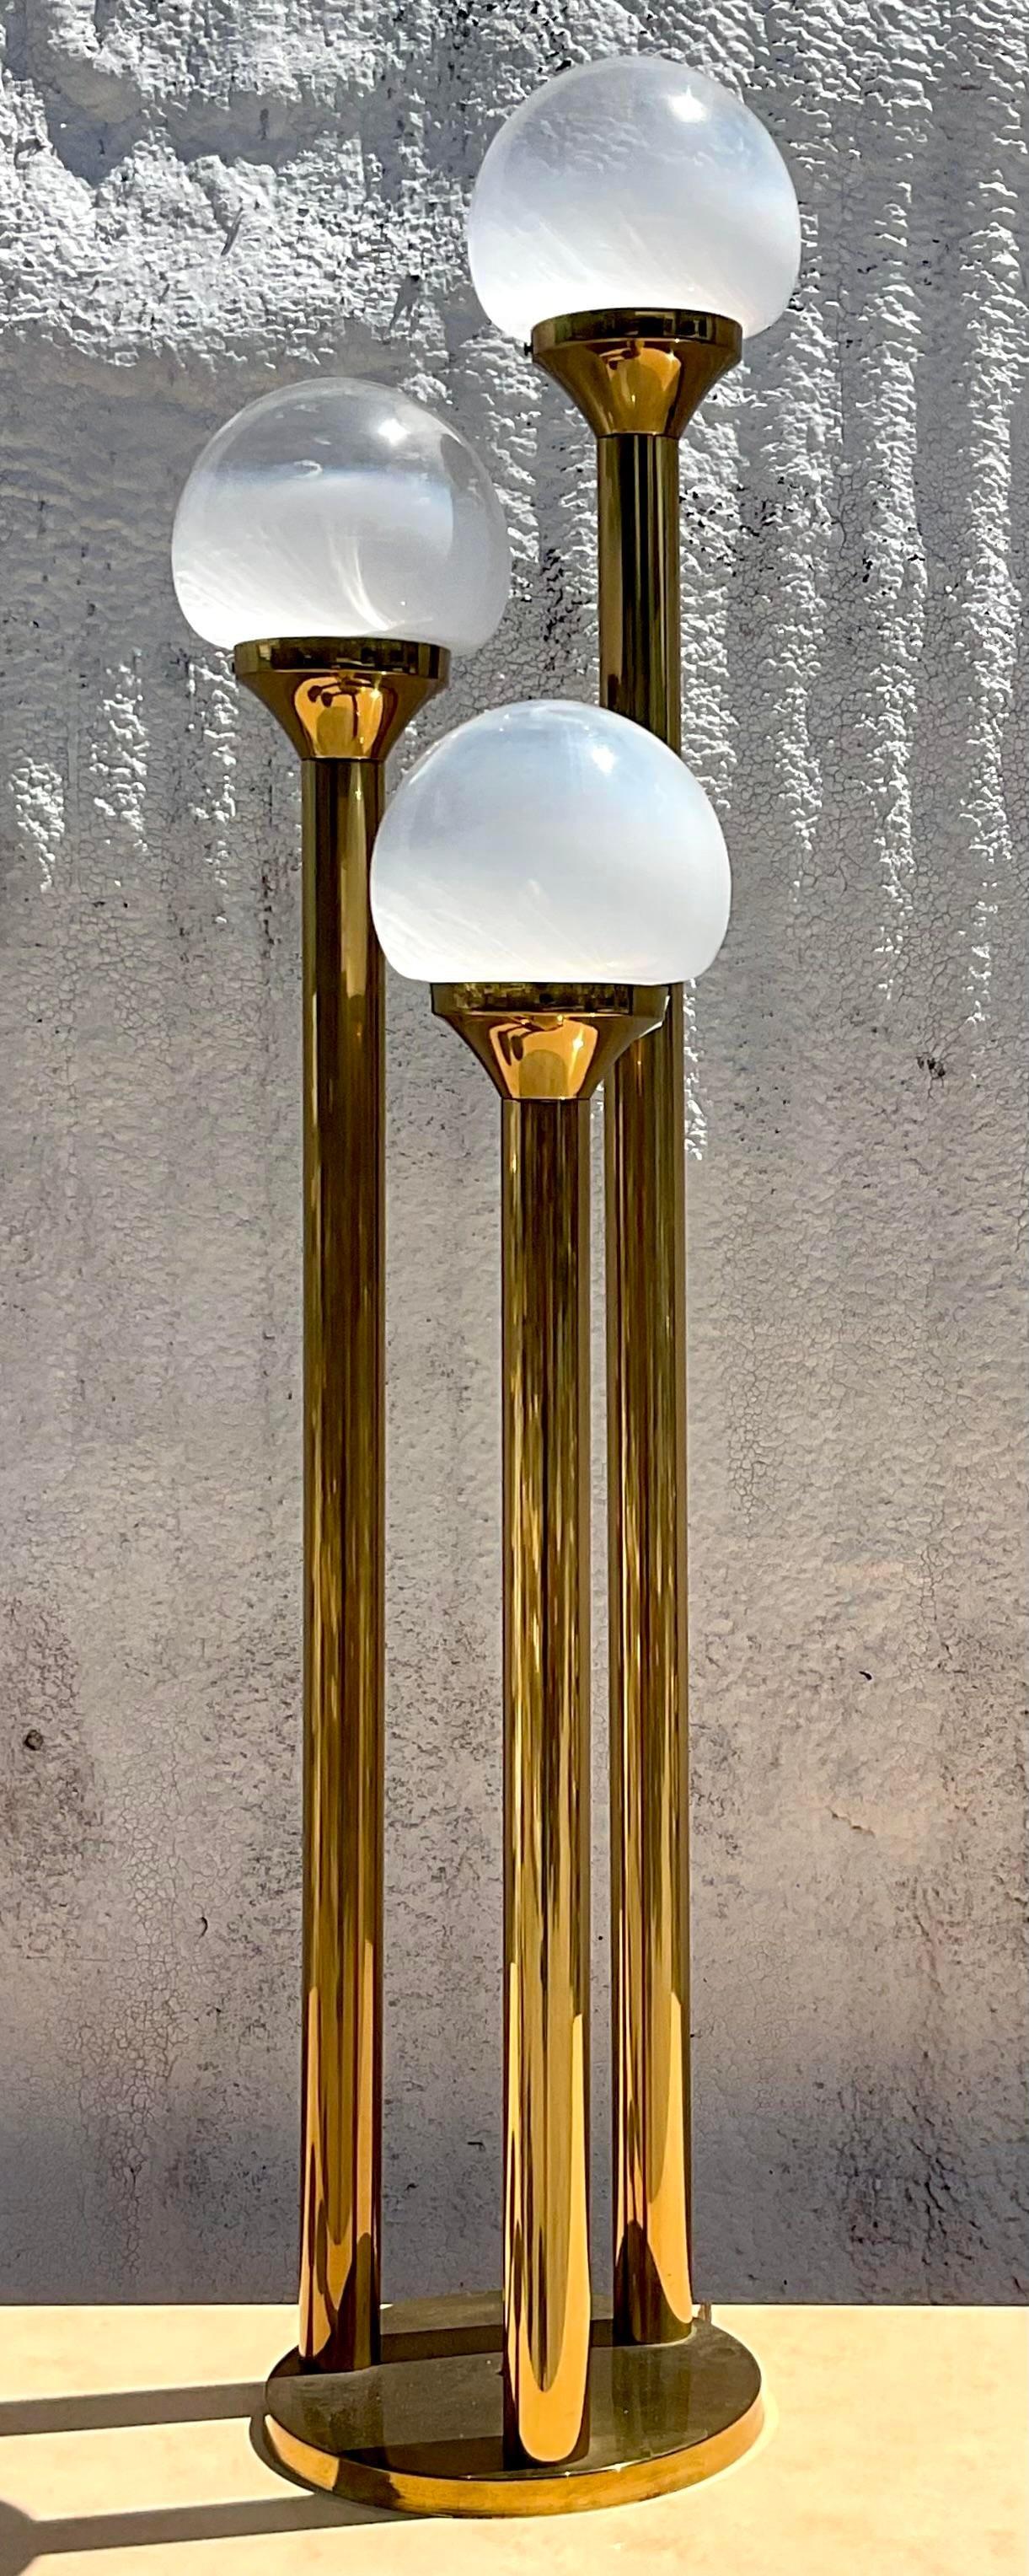 Gefertigt in der Tradition italienischer Kunstfertigkeit: Nach dem Vorbild der Vintage Mezzaga Murano Three Globe Lamp. Verleihen Sie Ihrem Raum europäische Eleganz, die nahtlos mit amerikanischem Stil verschmilzt und einen raffinierten